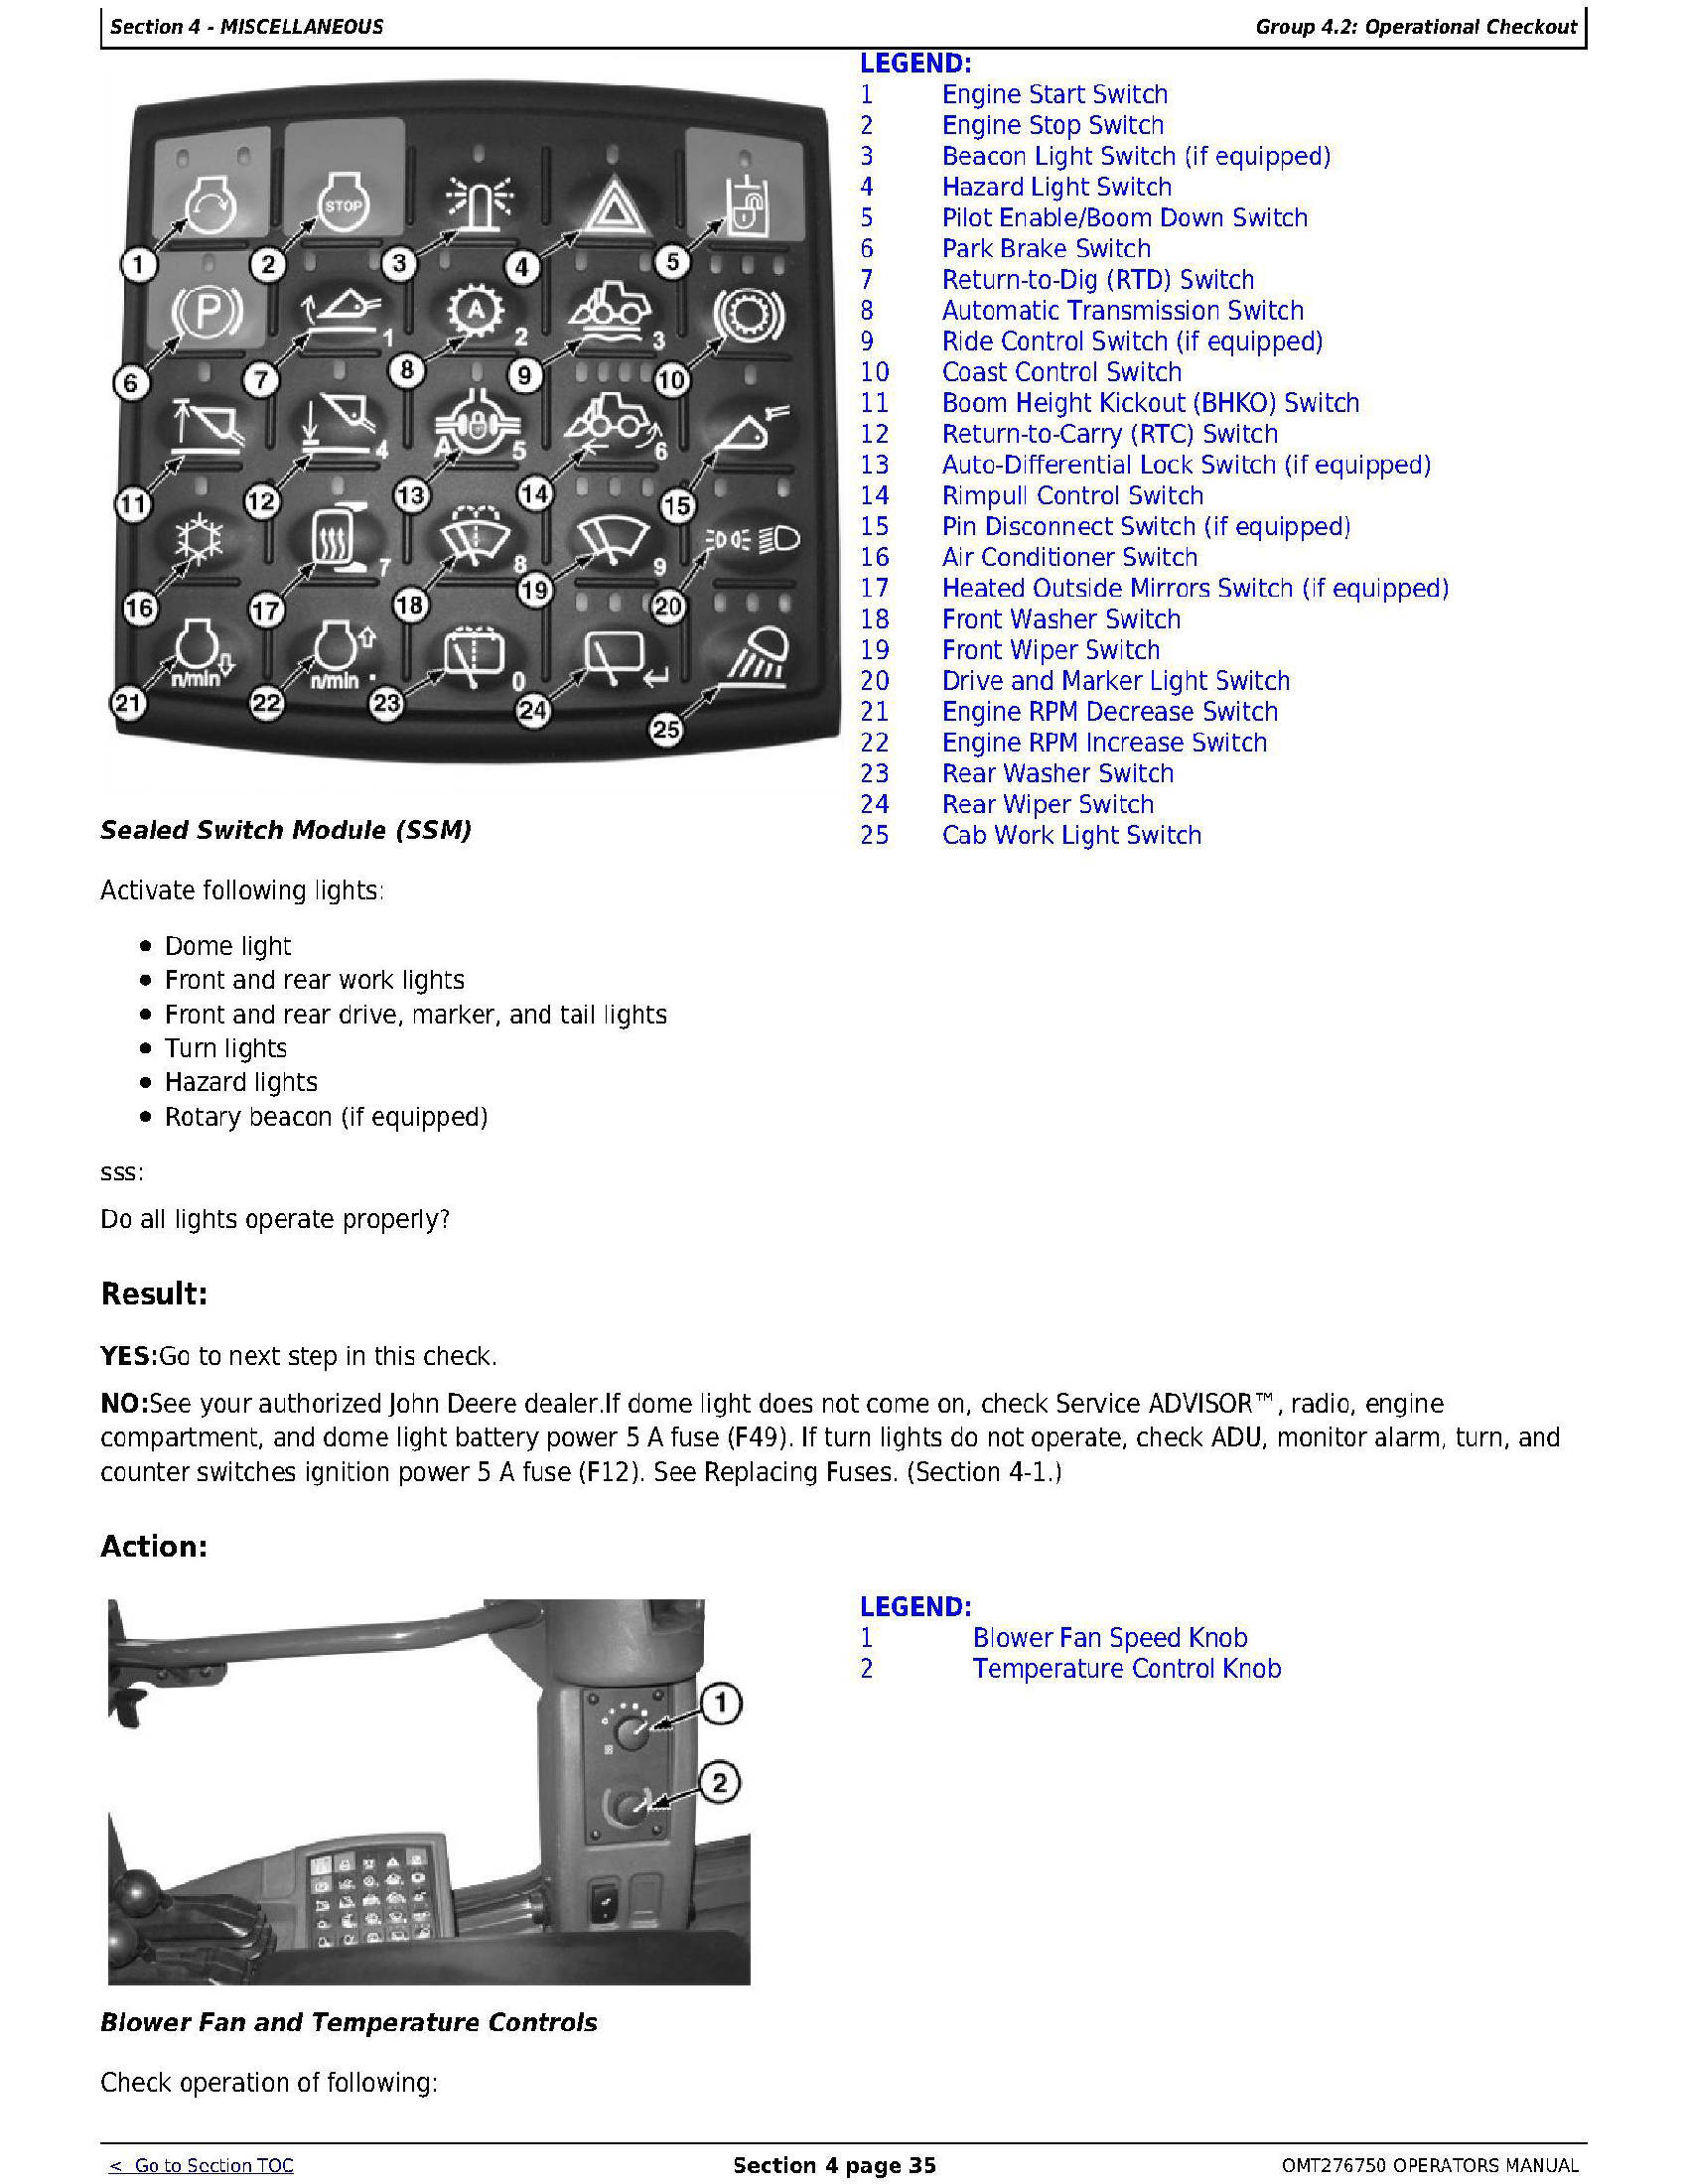 John Deere _E651322- manual pdf